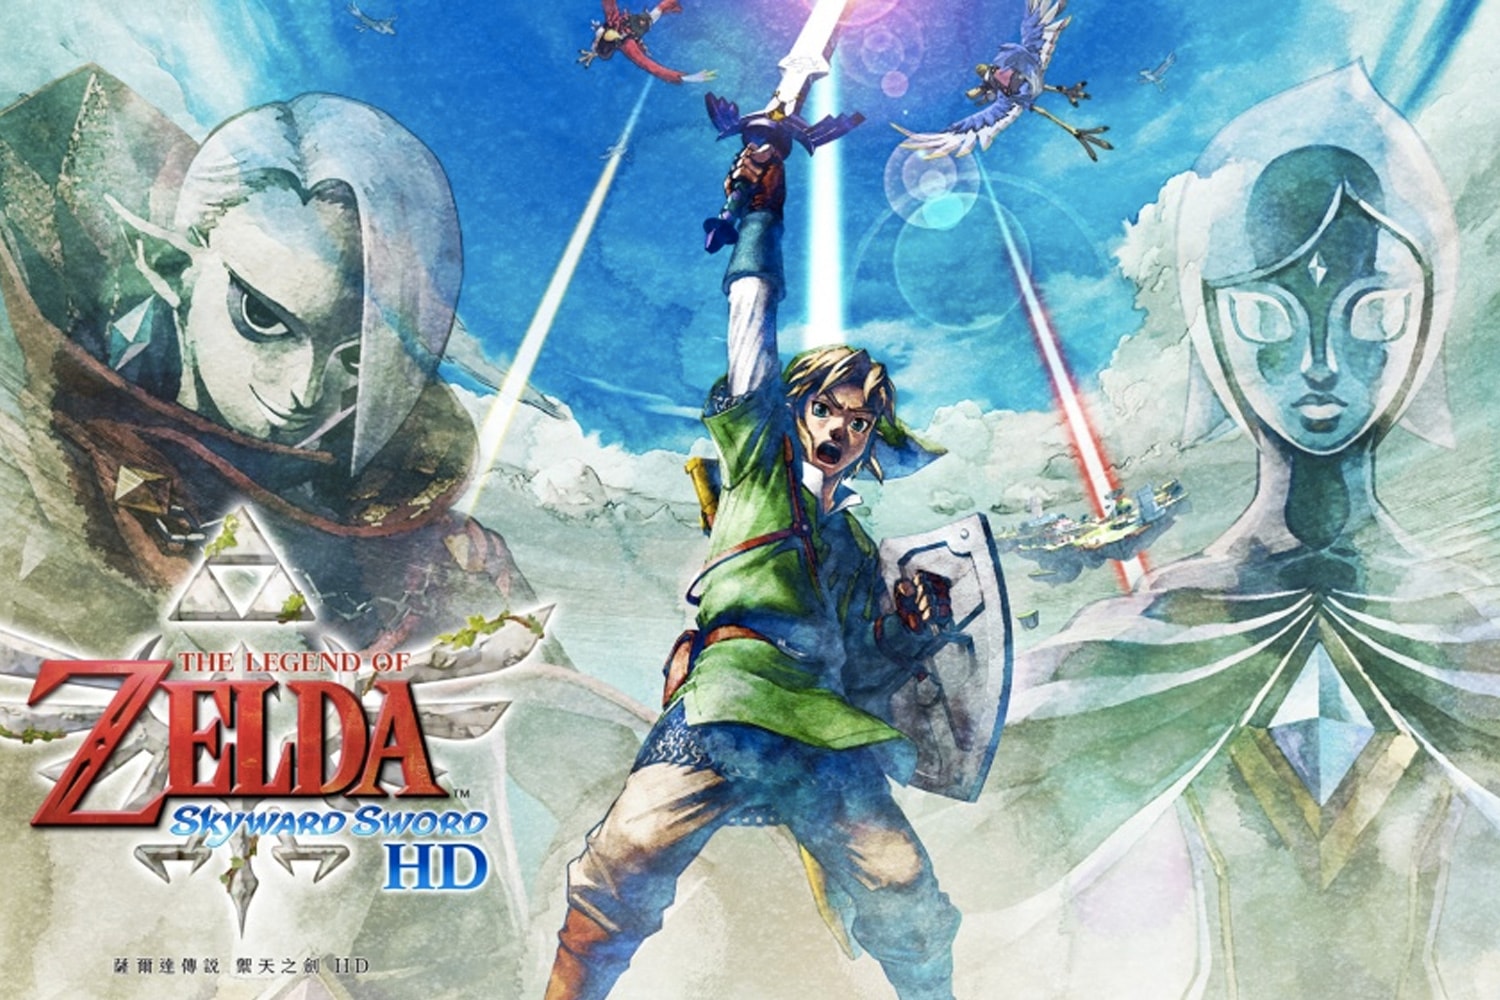 率先觀賞 Nintendo 全新重製版《薩爾達傳說 禦天之劍 HD》遊戲宣傳片